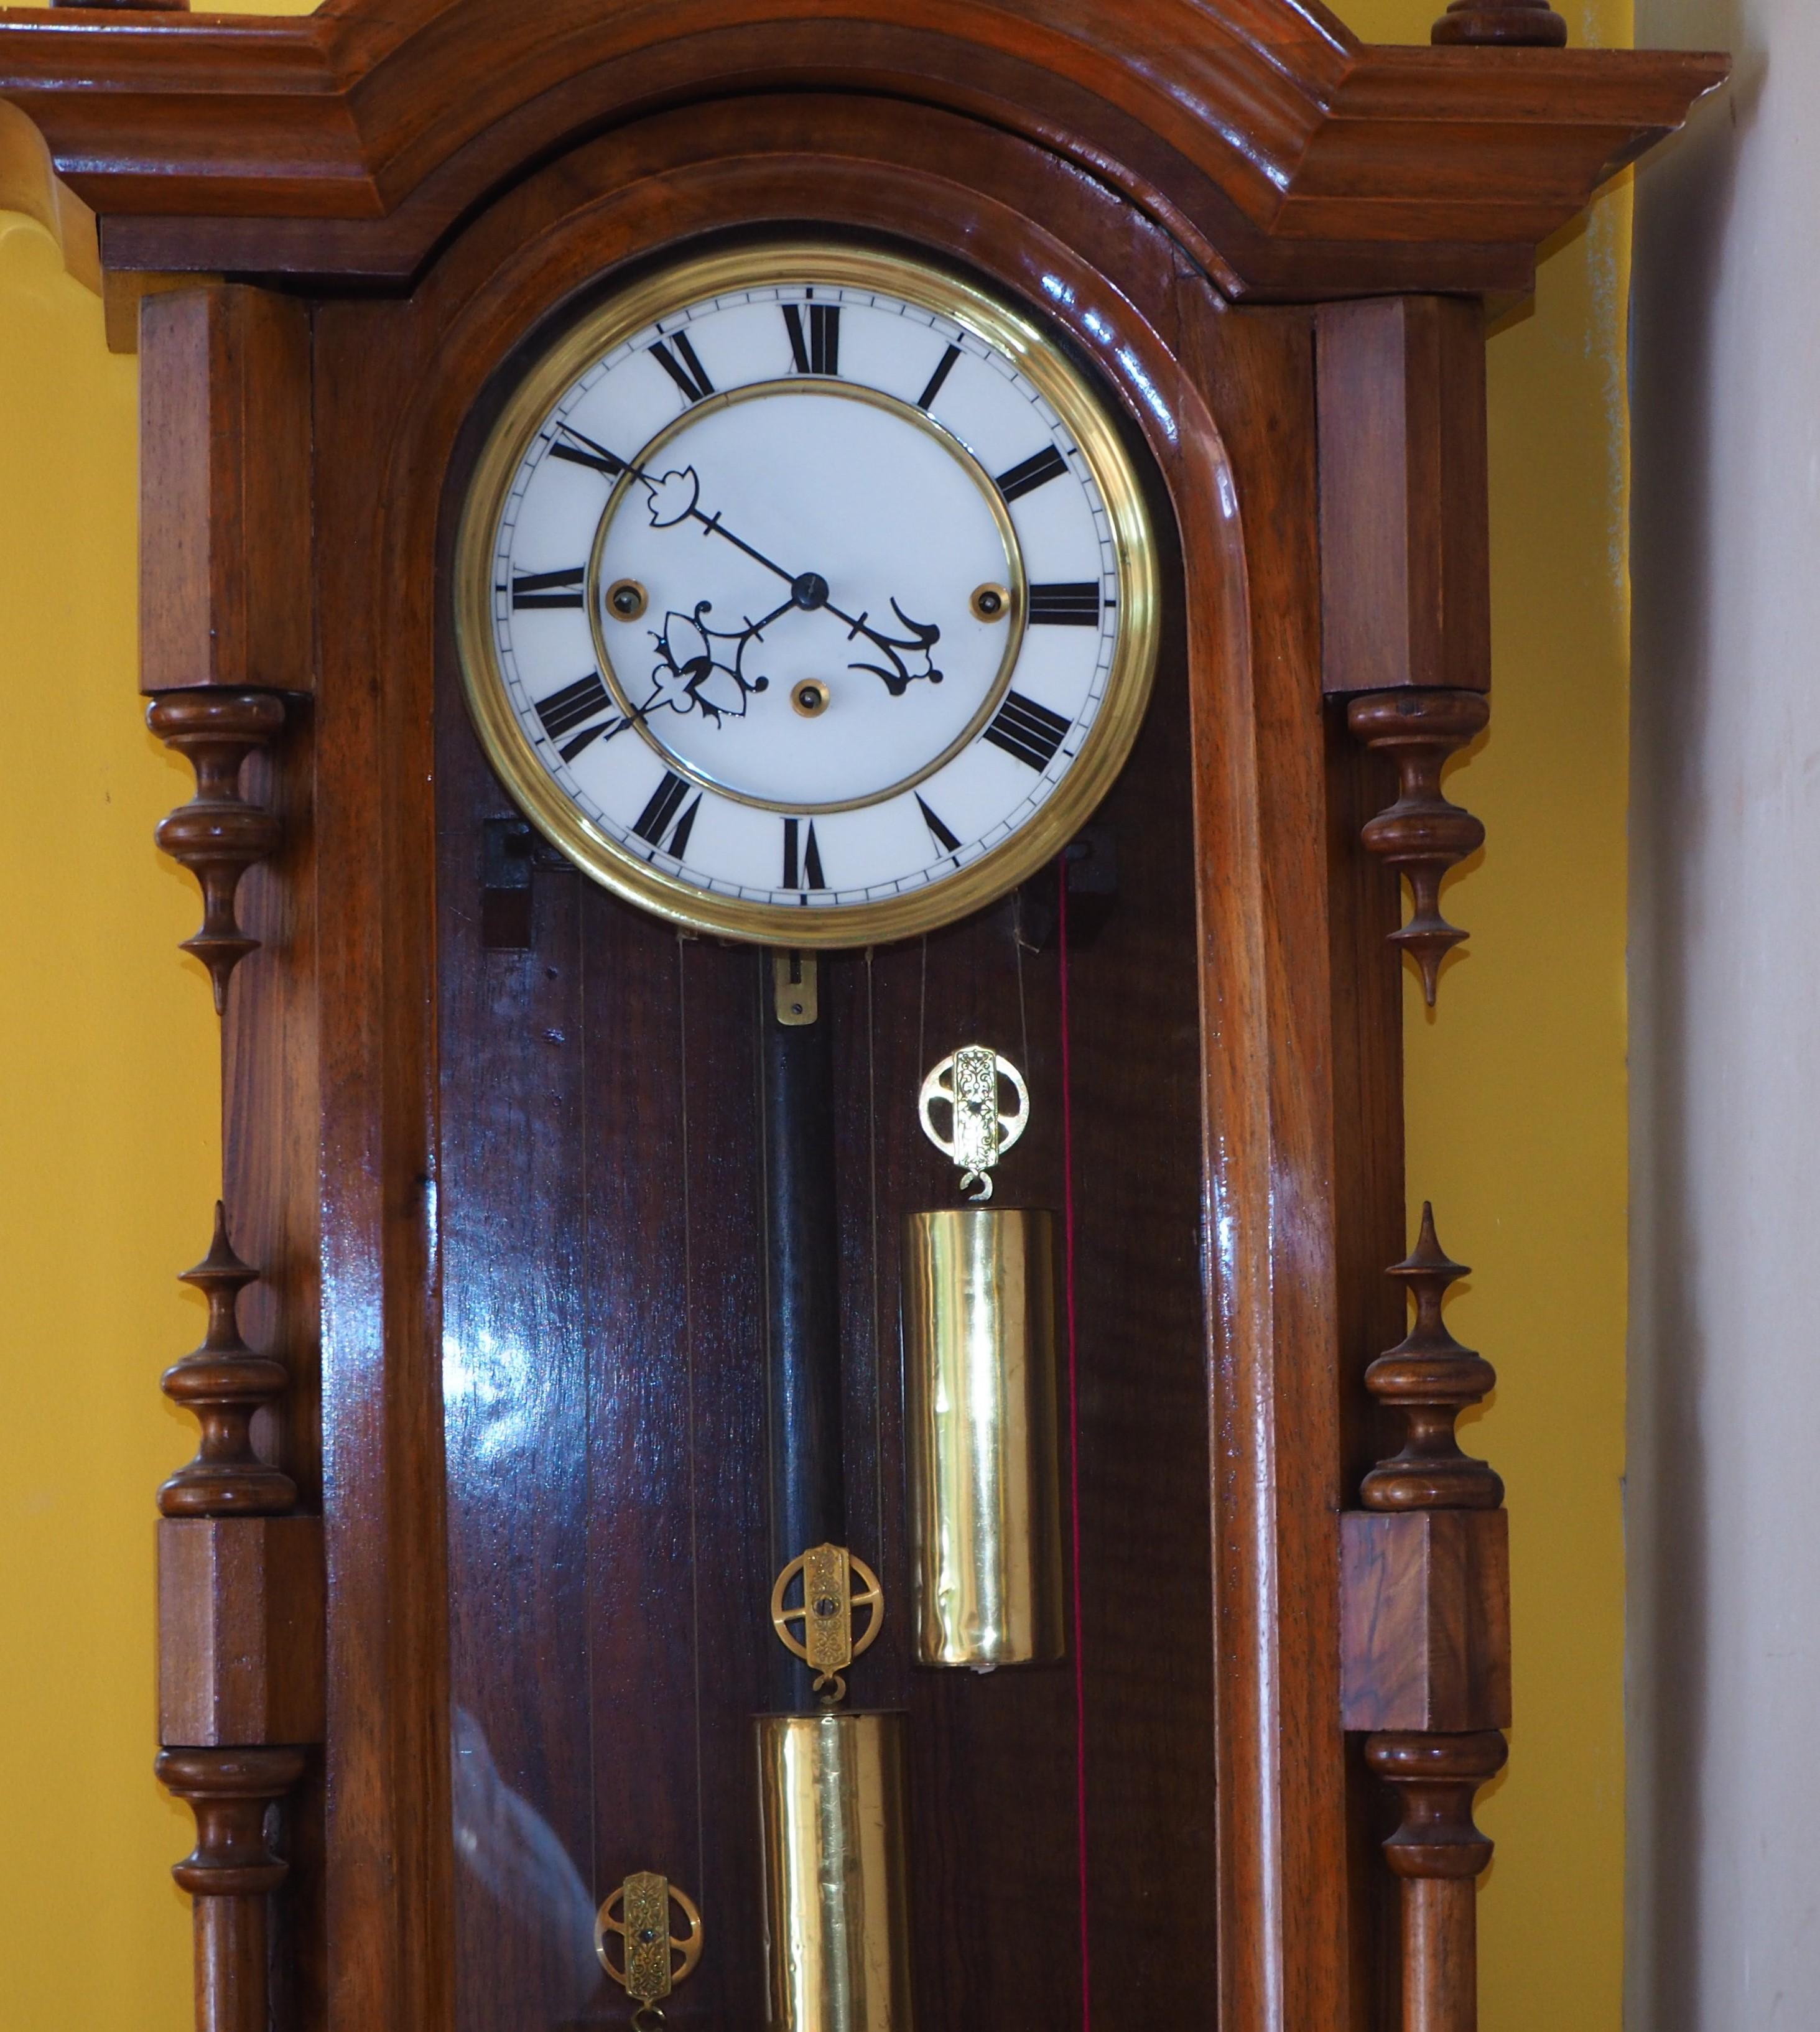 vienna regulator clock